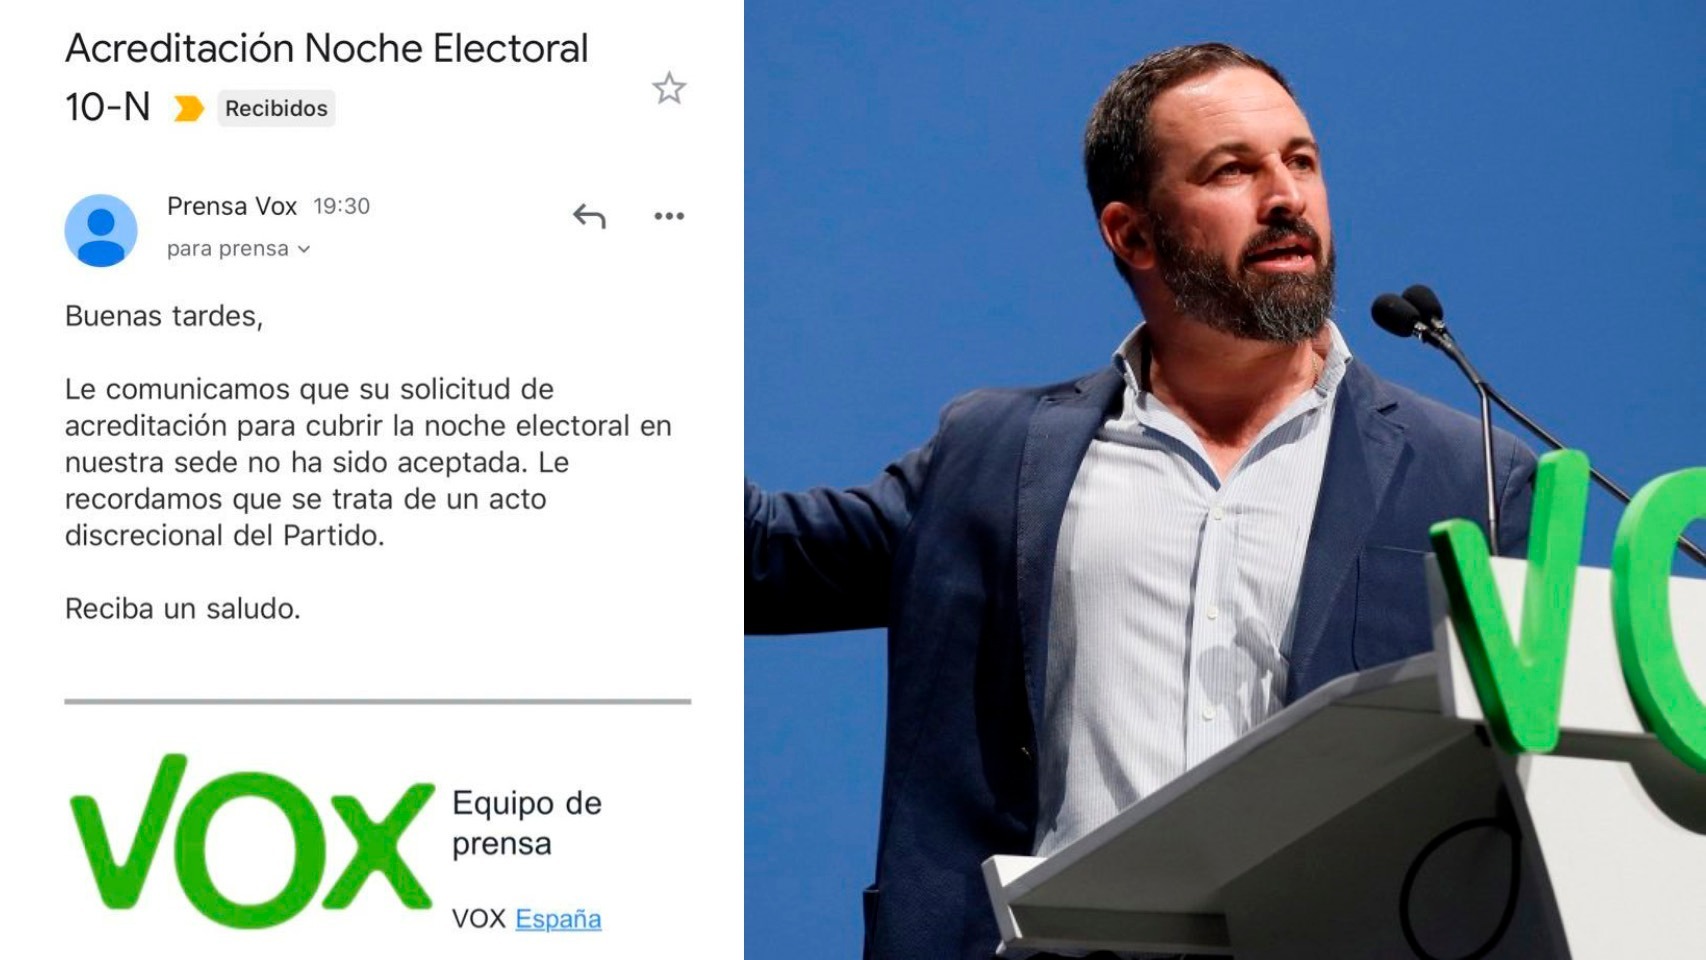 Vox vuelve a vetar a El Español y le impide el acceso a su sede en la noche electoral